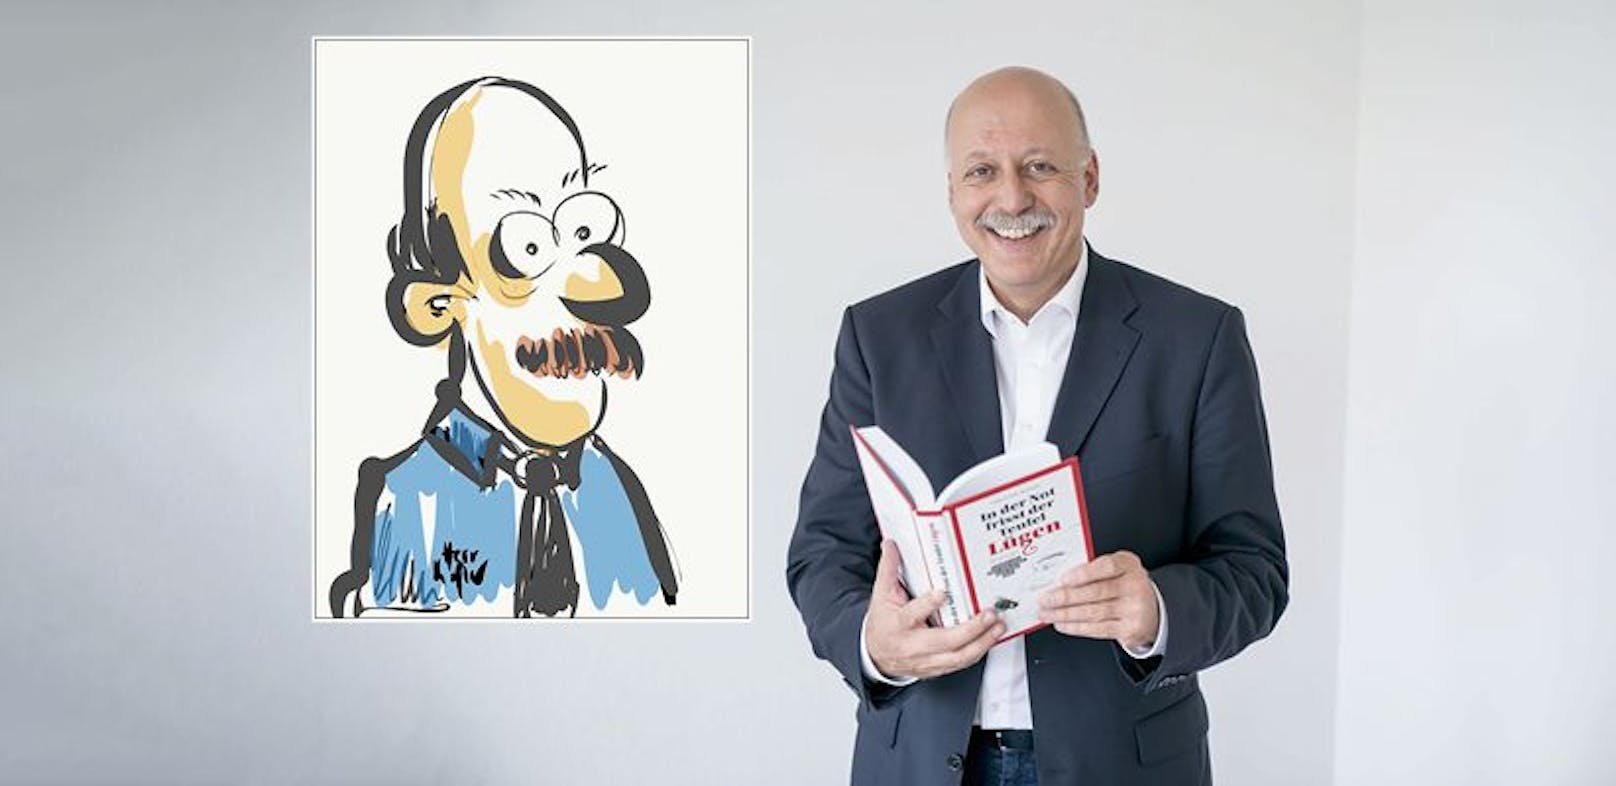 Christian Nusser verfasst "Kopfnüsse", den Comic dazu malte Wolfgang Kofler am Handy.